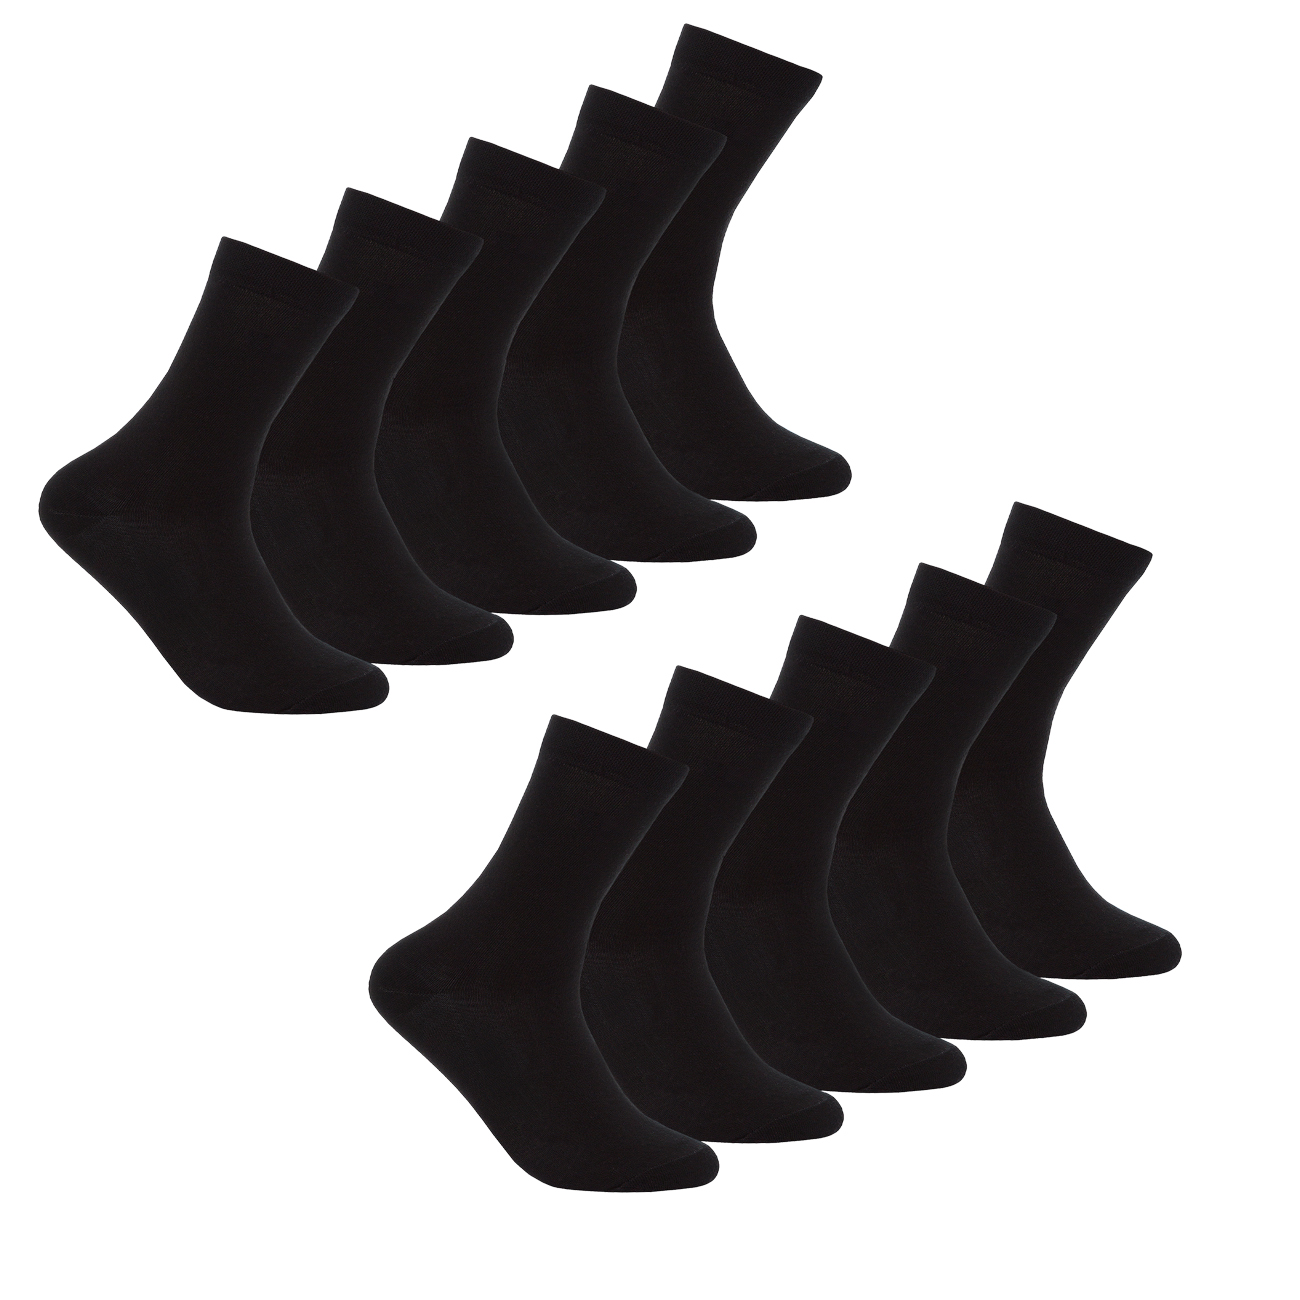 Ladies Black Socks 10-20 Pairs Cotton Blend Antibacterial Everyday Work Women/'s